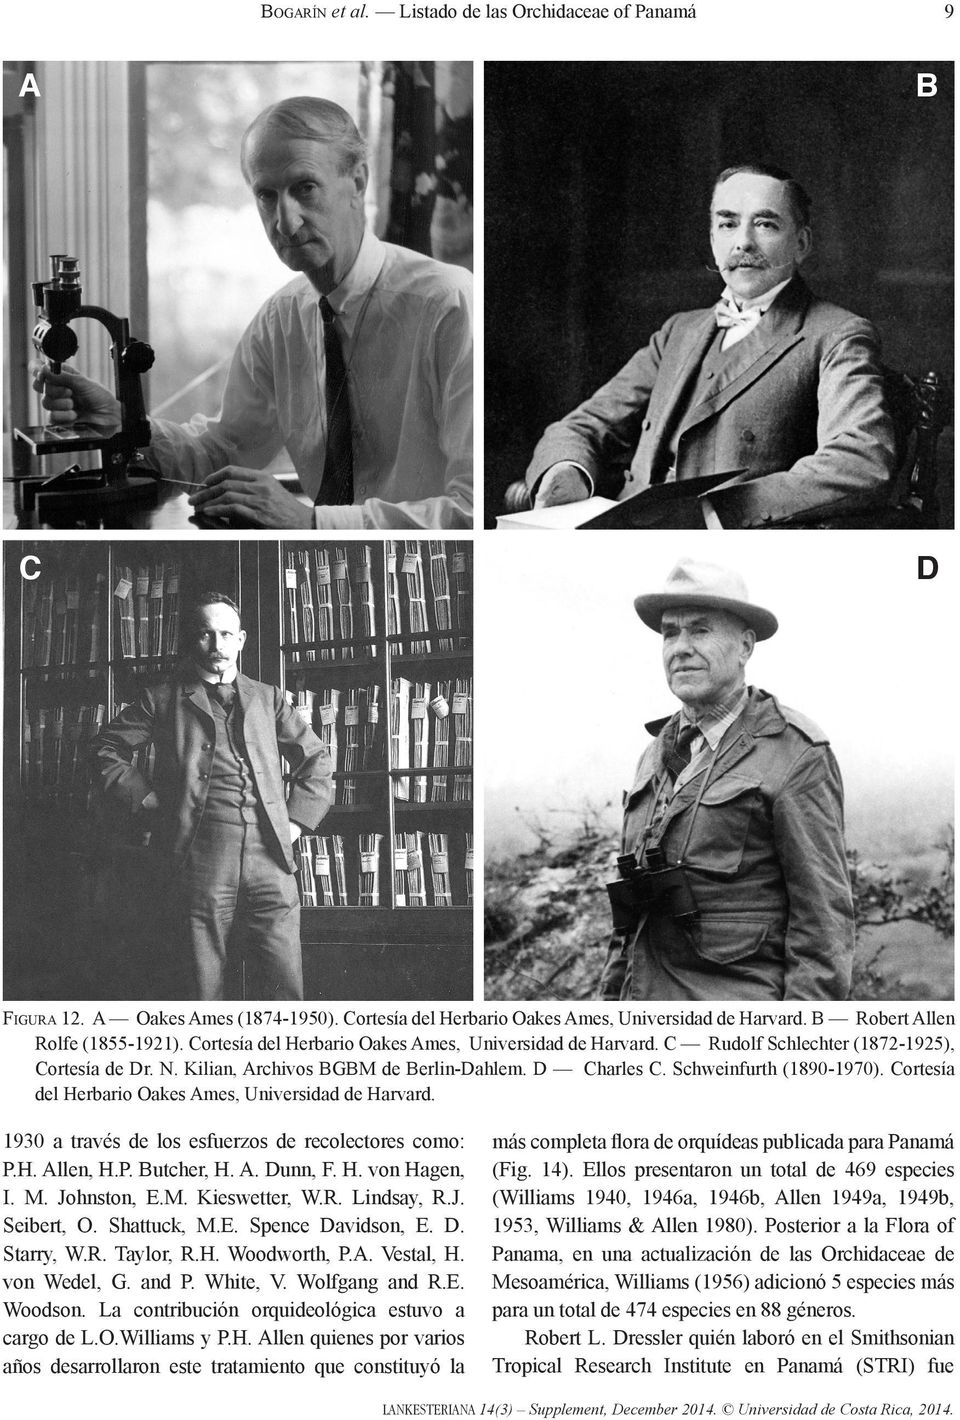 Cortesía del Herbario Oakes Ames, Universidad de Harvard. 1930 a través de los esfuerzos de recolectores como: P.H. Allen, H.P. Butcher, H. A. Dunn, F. H. von Hagen, I. M. Johnston, E.M. Kieswetter, W.